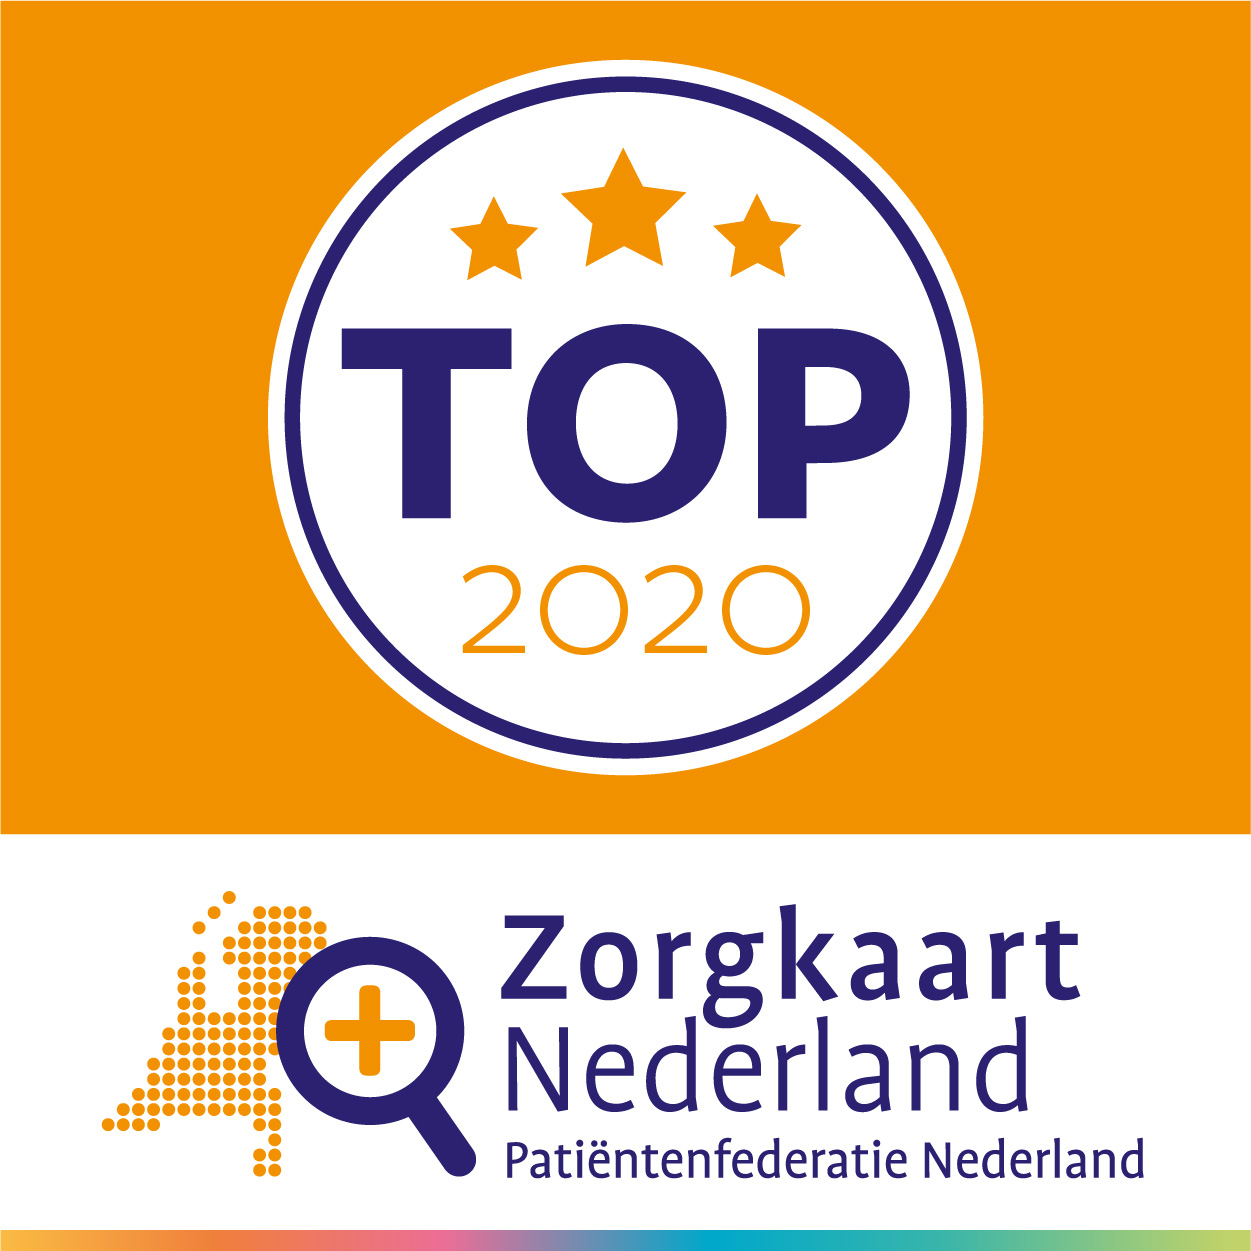 Frankelandgroep staat tweemaal in ZorgkaartNederland Top2020